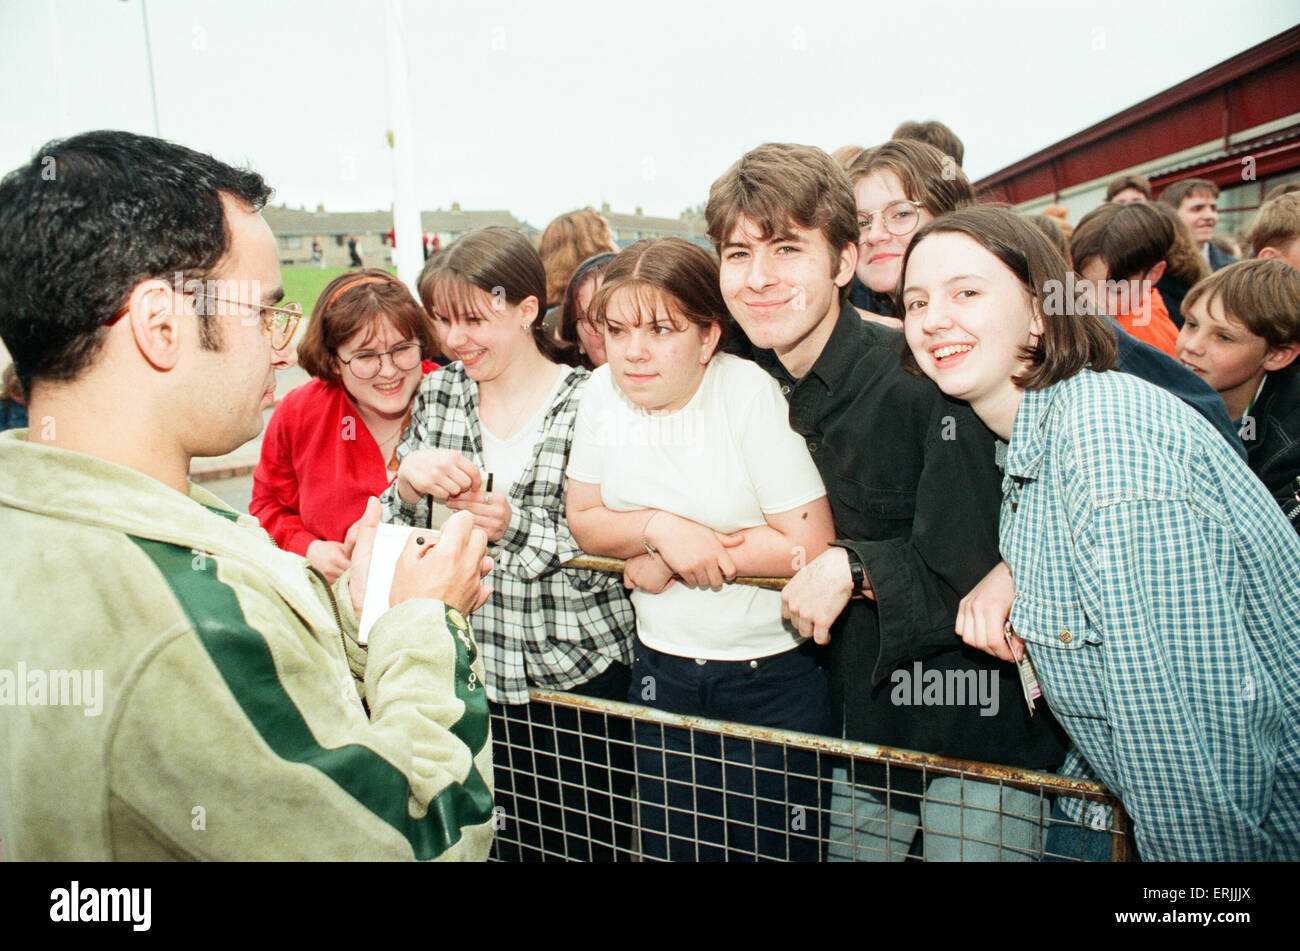 Jugar al centro de Clickimin pulpa, Shetland, 13 de agosto de 1996. Seguidores y partidarios. Foto de stock